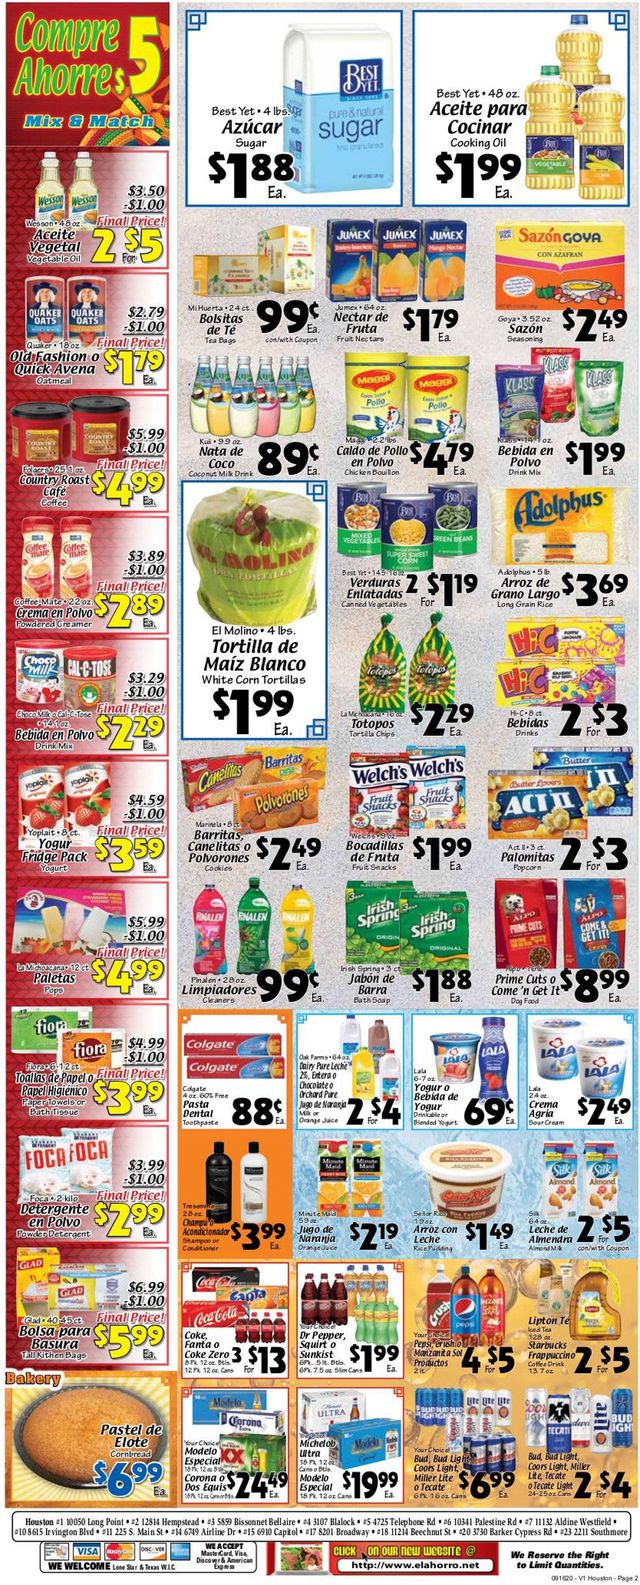 El Ahorro Supermarket Ad from 09/16/2020